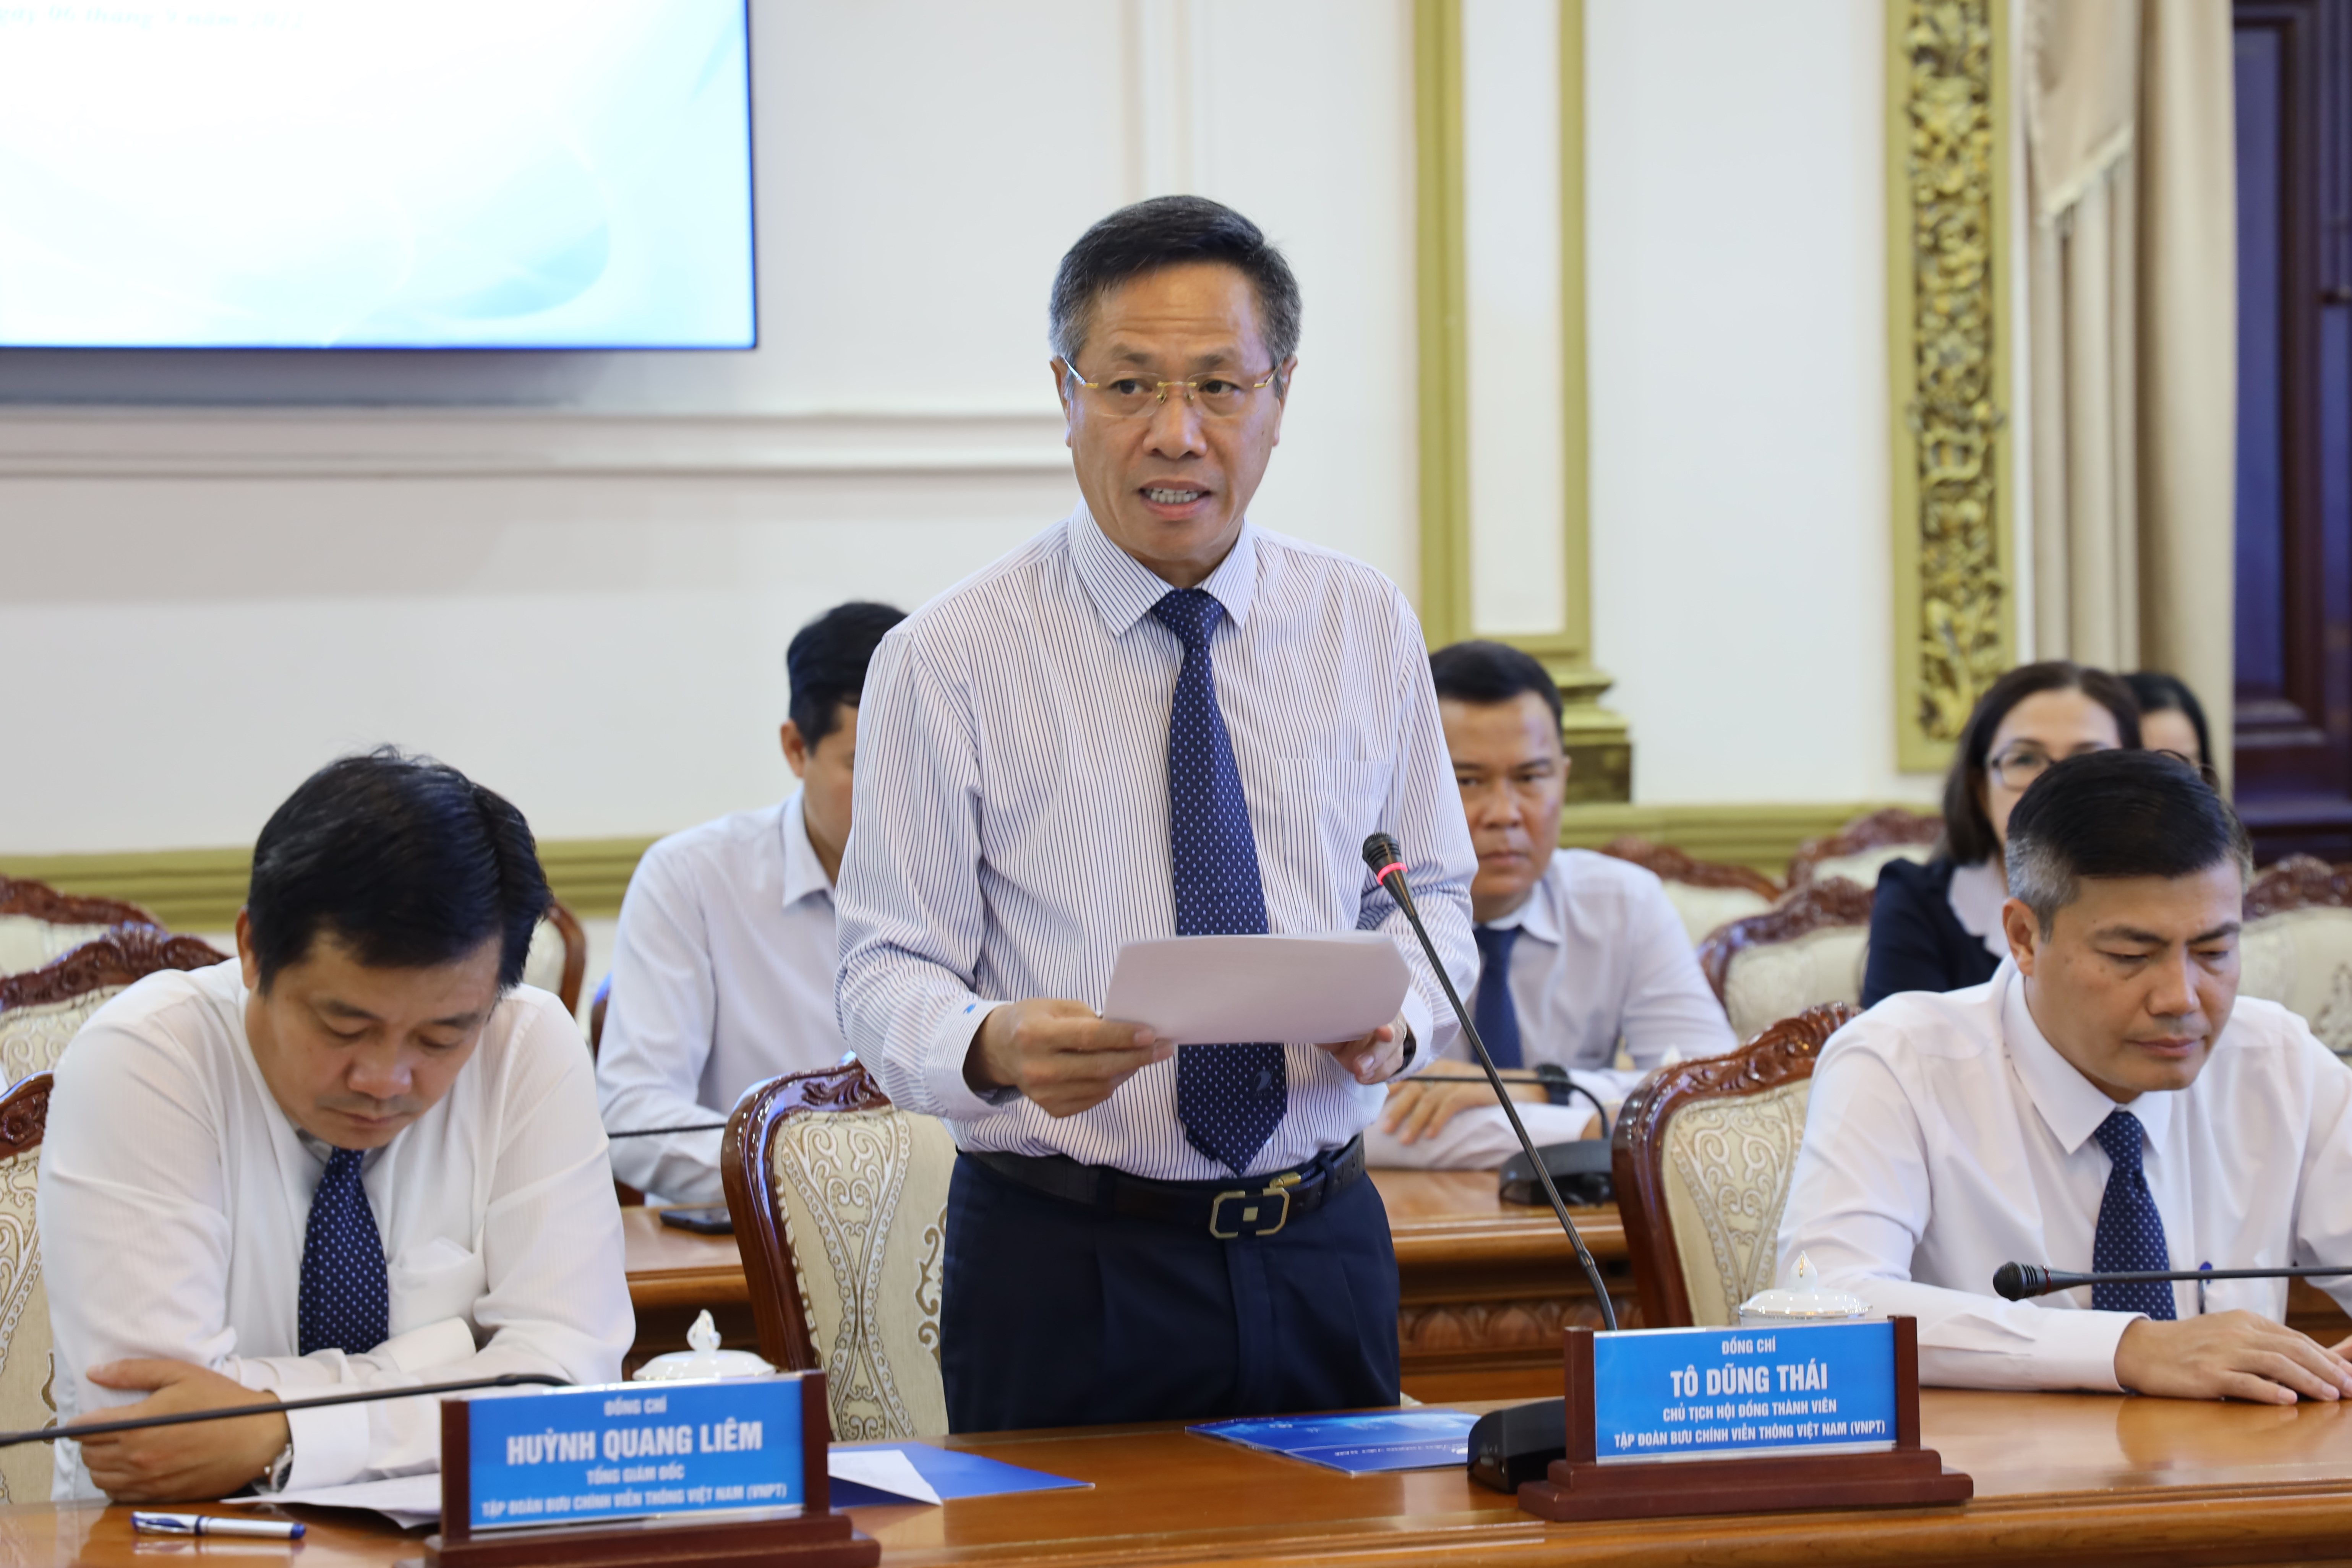 Chủ tịch Hội đồng thành viên Tập đoàn VNPT Tô Dũng Thái phát biểu tại buổi lễ. Ảnh: Linh Nhi.